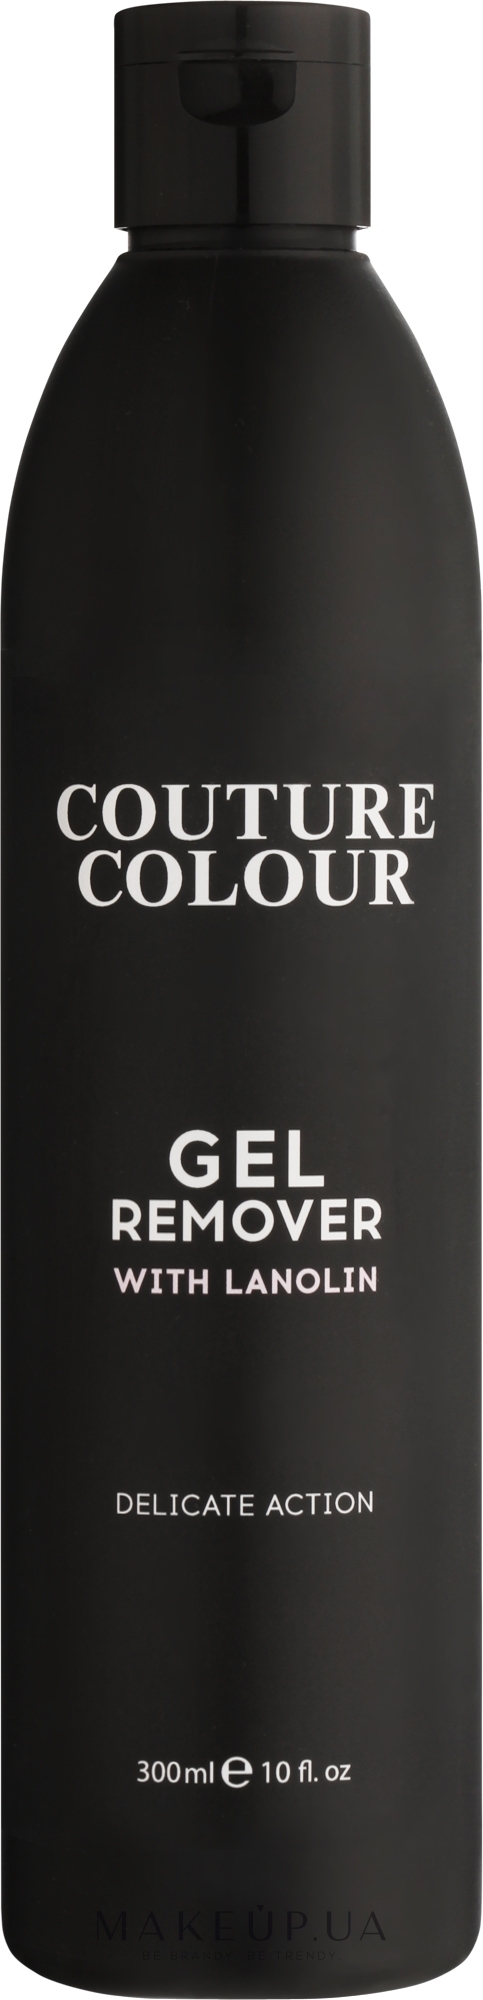 Средство для удаления геля и гель-лака с ланолином - Couture Colour Gel Remover with Lanolin — фото 300ml